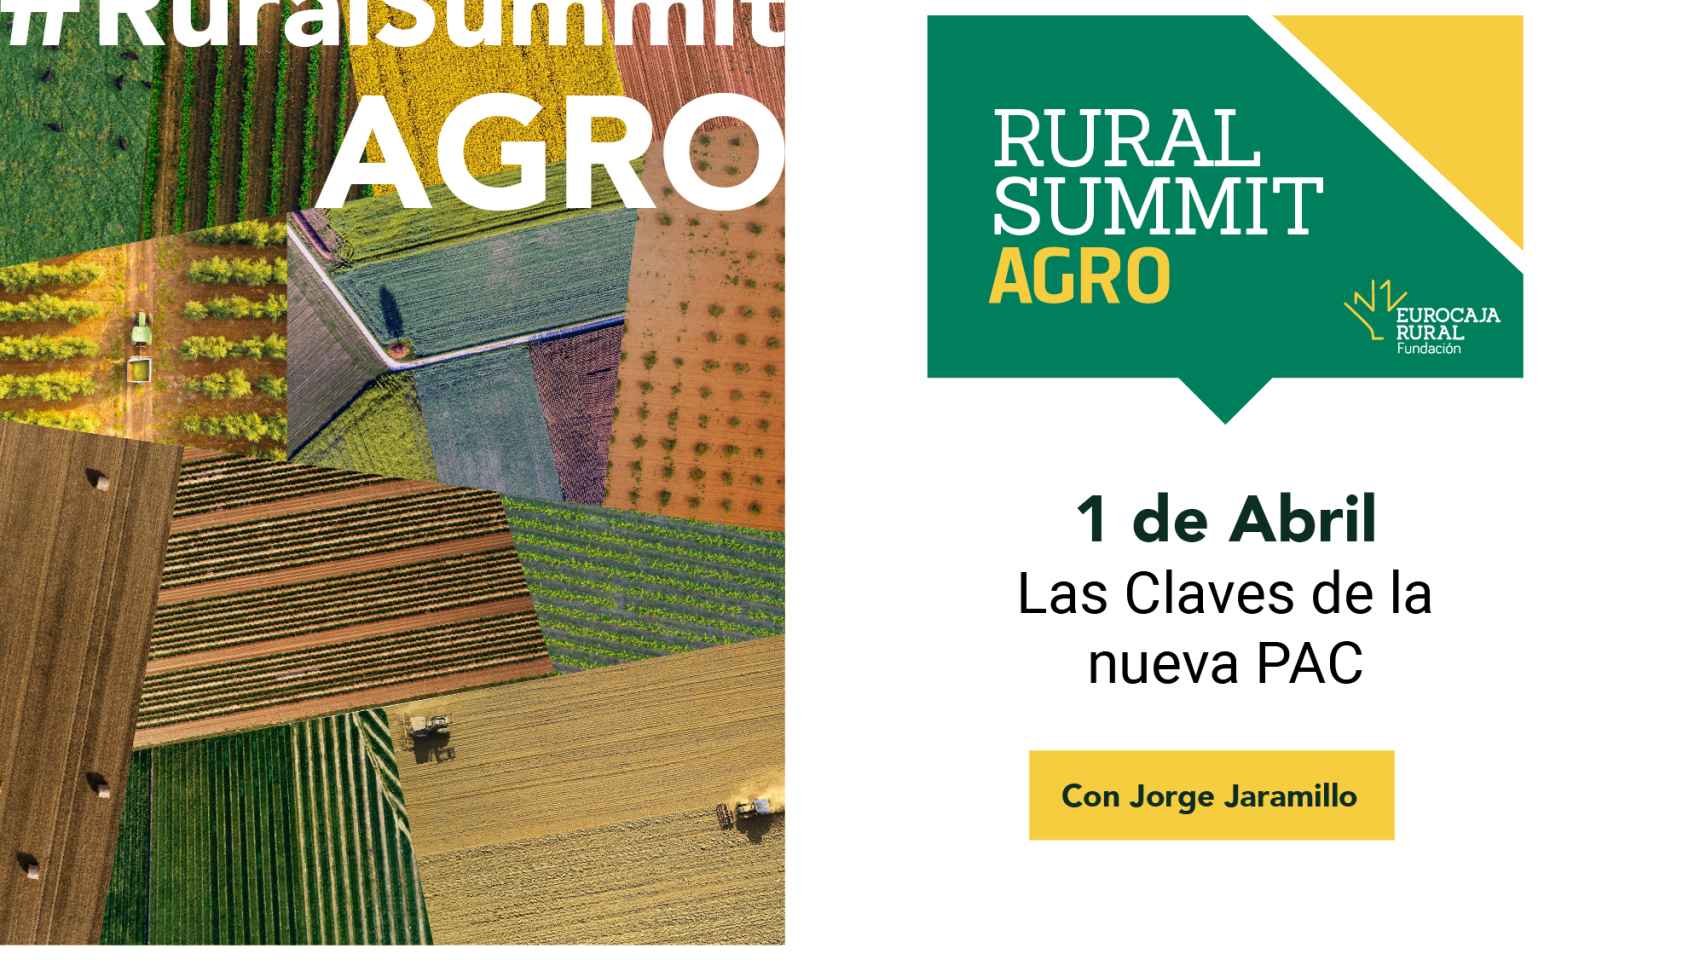 Cartel del #RuralSummitAgro 2022